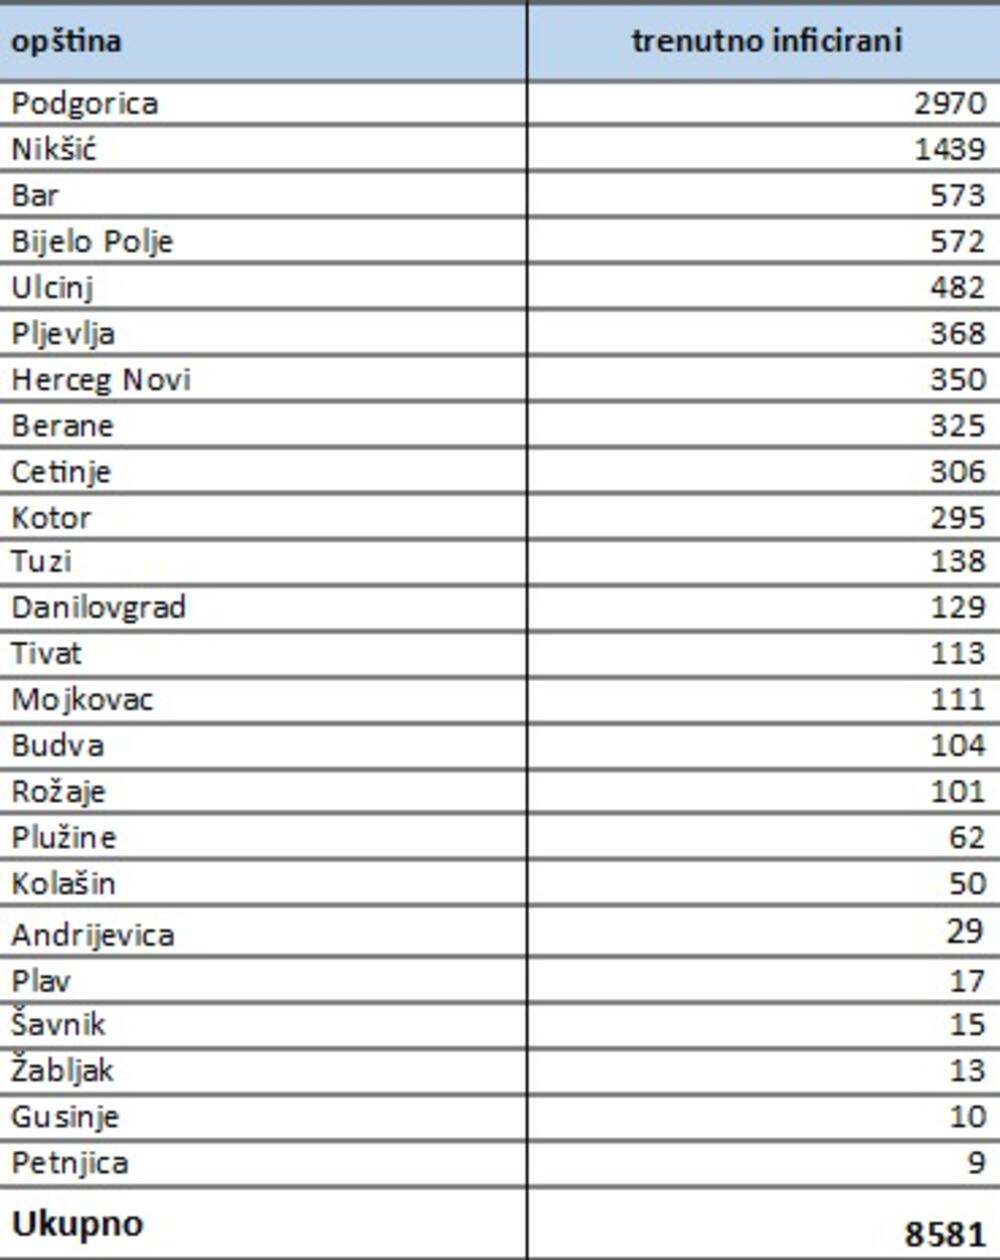 Broj zaraženih po opštinama